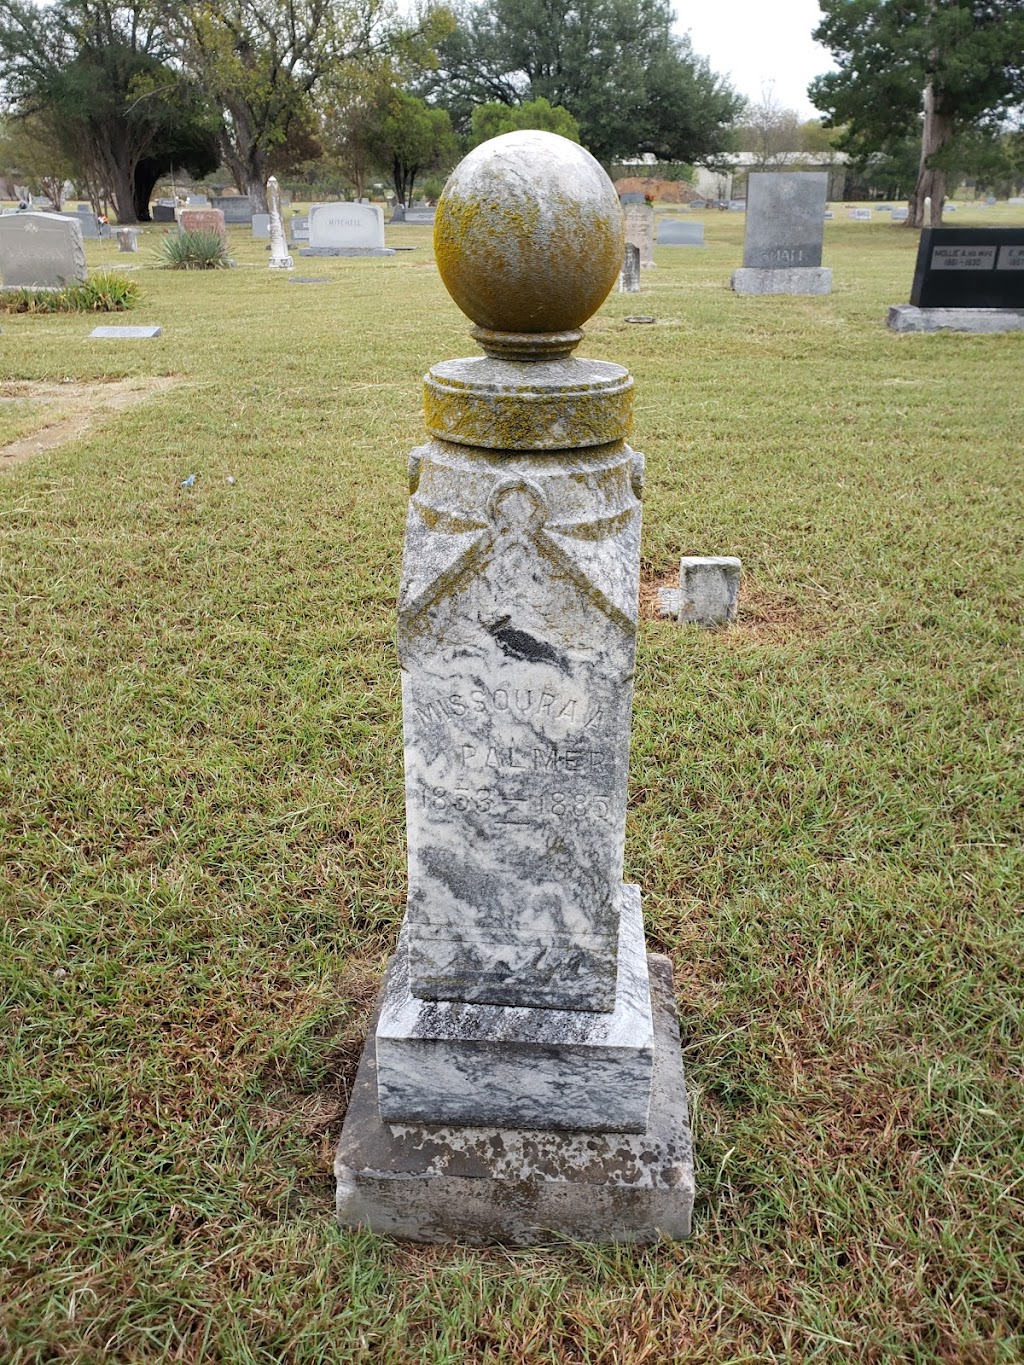 Everman Cemetery | 834 E Enon Ave, Everman, TX 76140, USA | Phone: (817) 293-3343